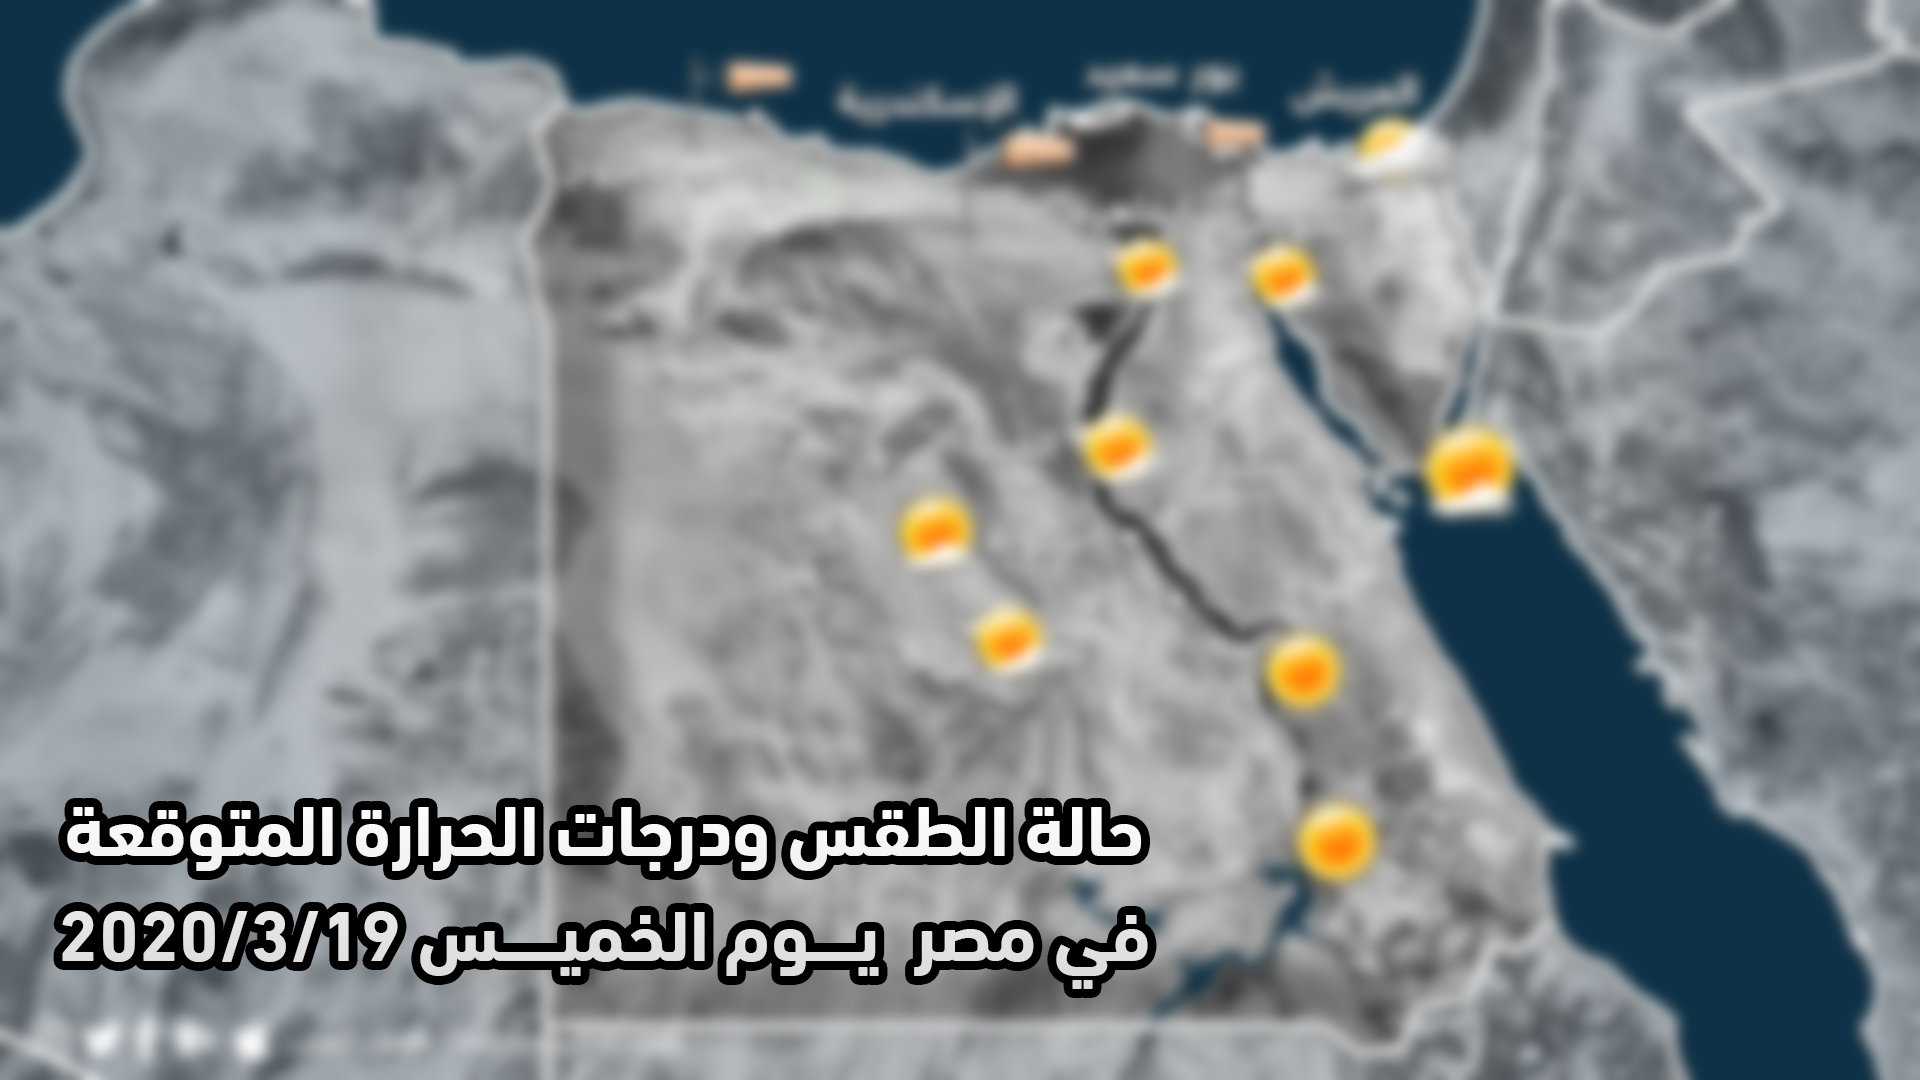 مصر   حالة الطقس ودرجات الحرارة المتوقعة يوم الخميس 2020/3/19   طقس العرب